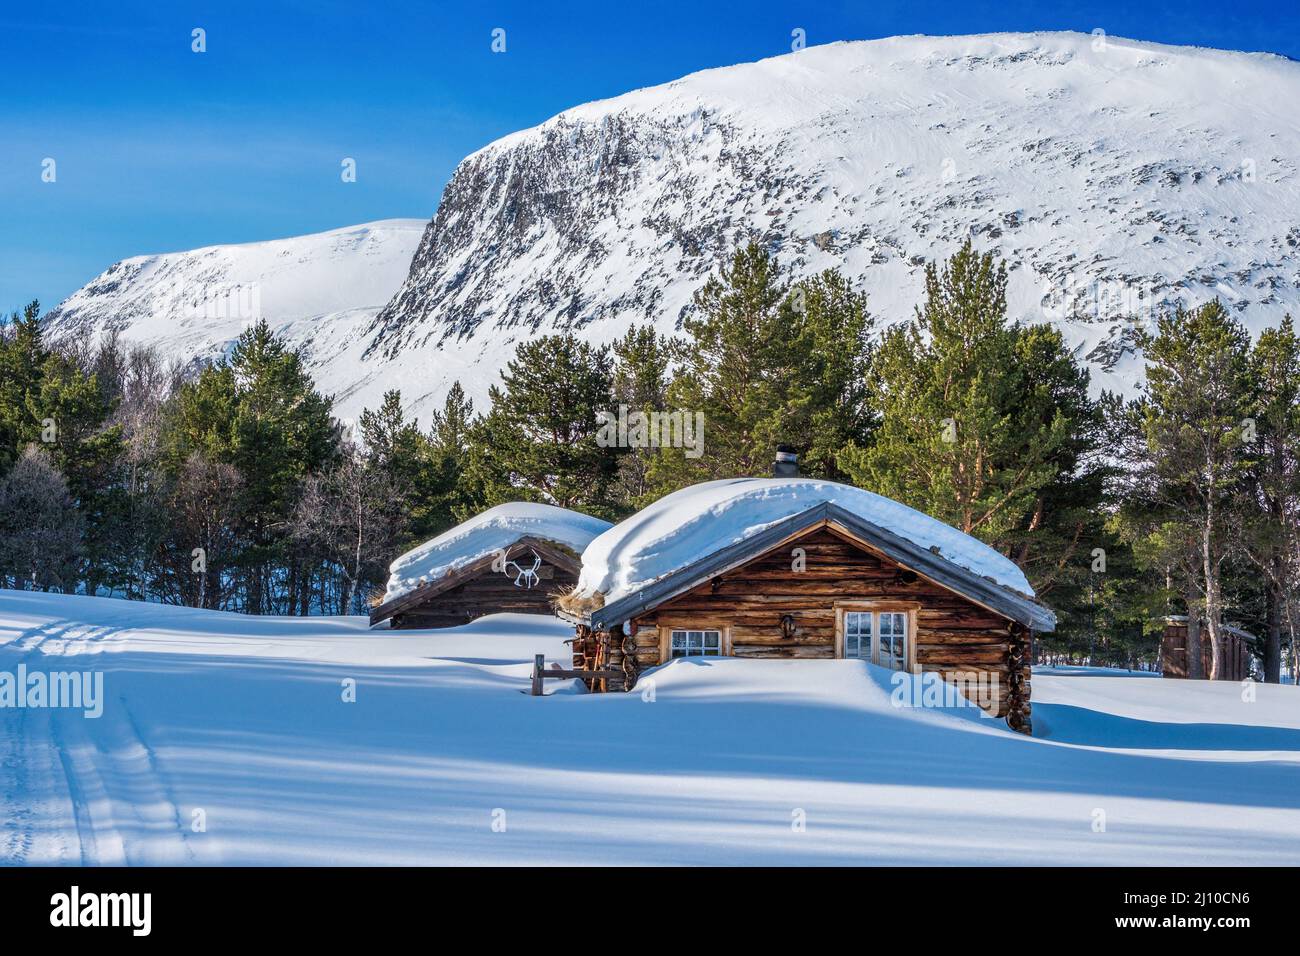 Schneebedeckte Berghütte / Bauernhaus in der Dovre Region der norwegischen Berge Stockfoto